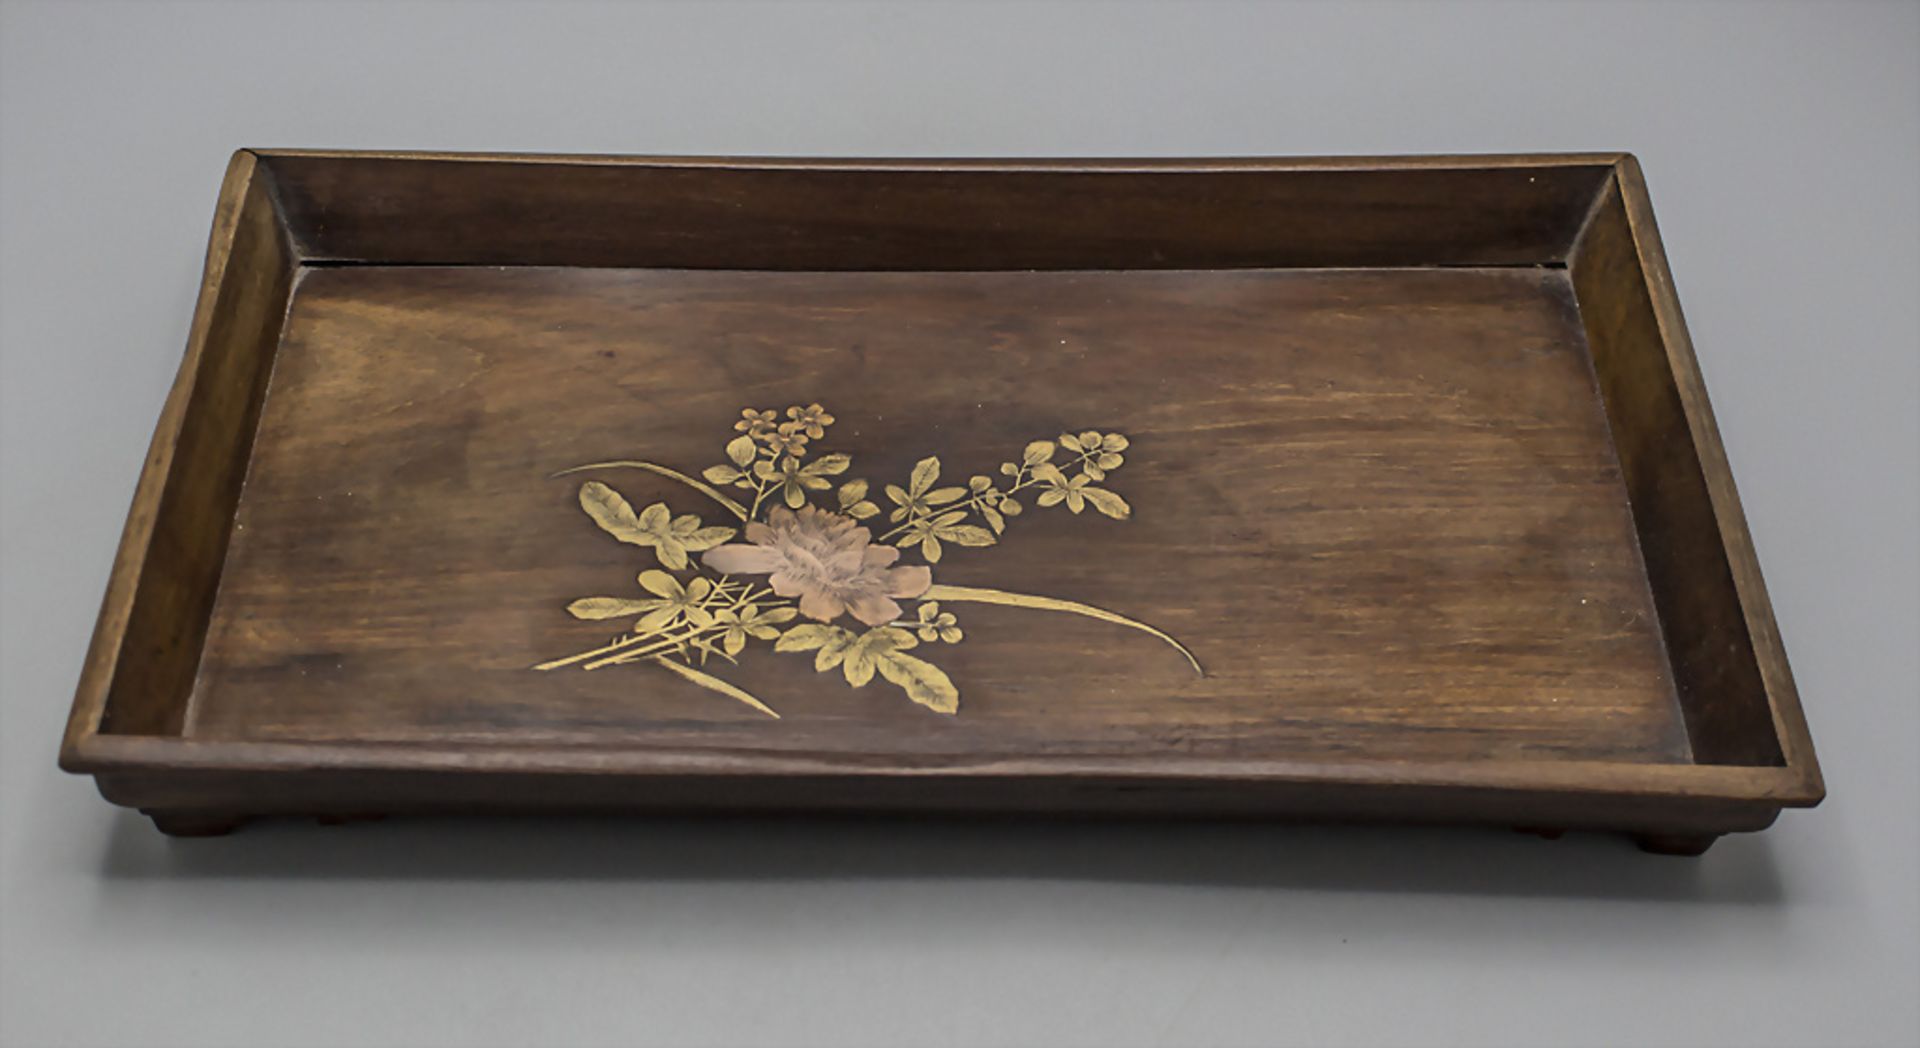 Holztablett auf vier Füßen mit Floraldekor / A footed wooden tray with floral inlays, ... - Image 5 of 6